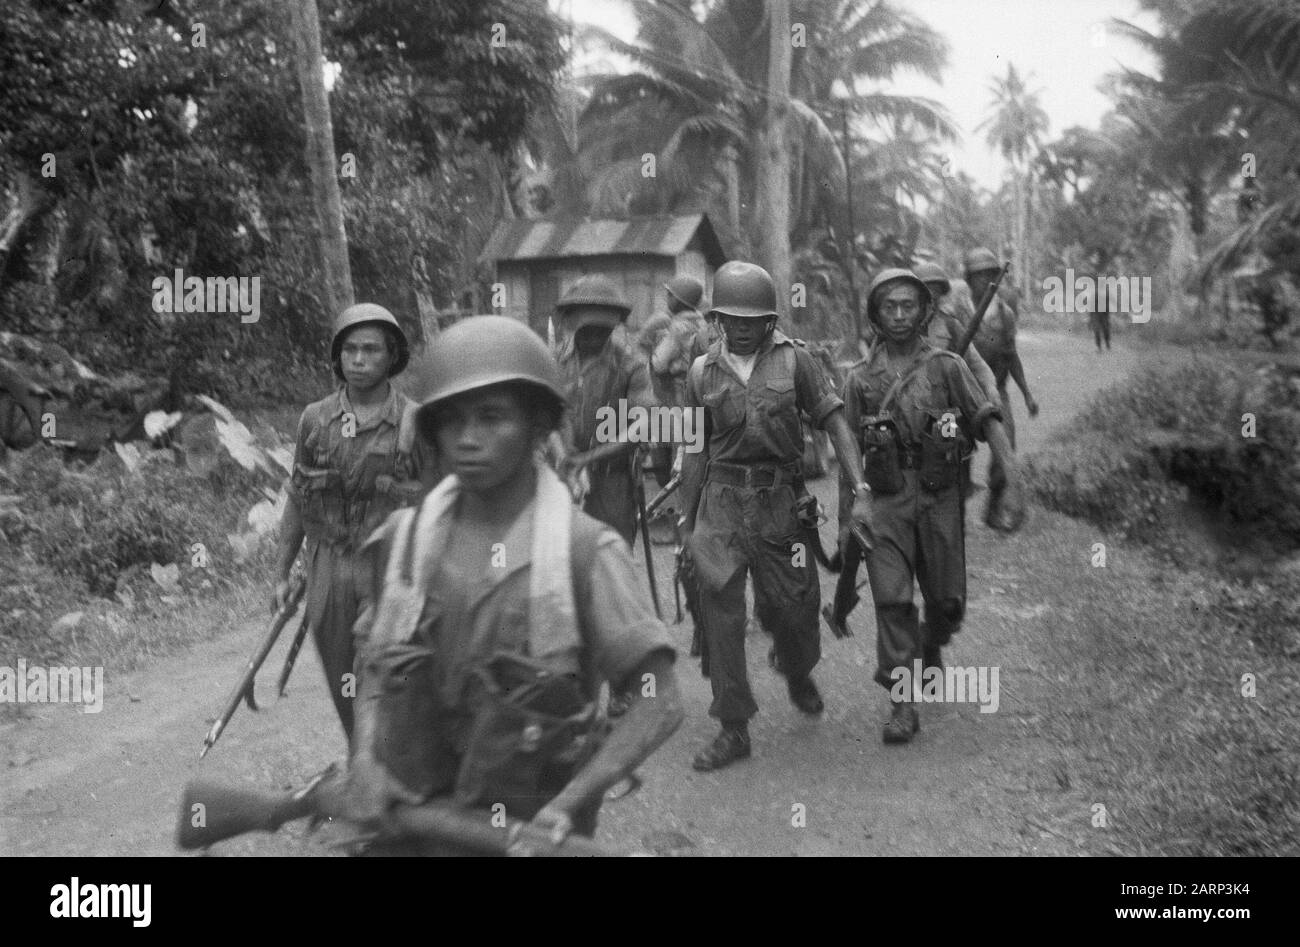 la marcha de Tapanoeli, Tarutoeng, Sibolga, Padang, Sidempoean En un kampong, una emboscada fue descubierta por japoneses abandonados. Después de un breve tiroteo, en el que uno de nuestros soldados mató al soldado javanés Ranoe de primera clase, el enemigo huye. Una nueva patrulla se marcha para rastrear y desactivar el enemigo anotación: DJK Fecha: Diciembre 1948 ubicación: Indonesia, Dutch East Indies, Sumatra Foto de stock